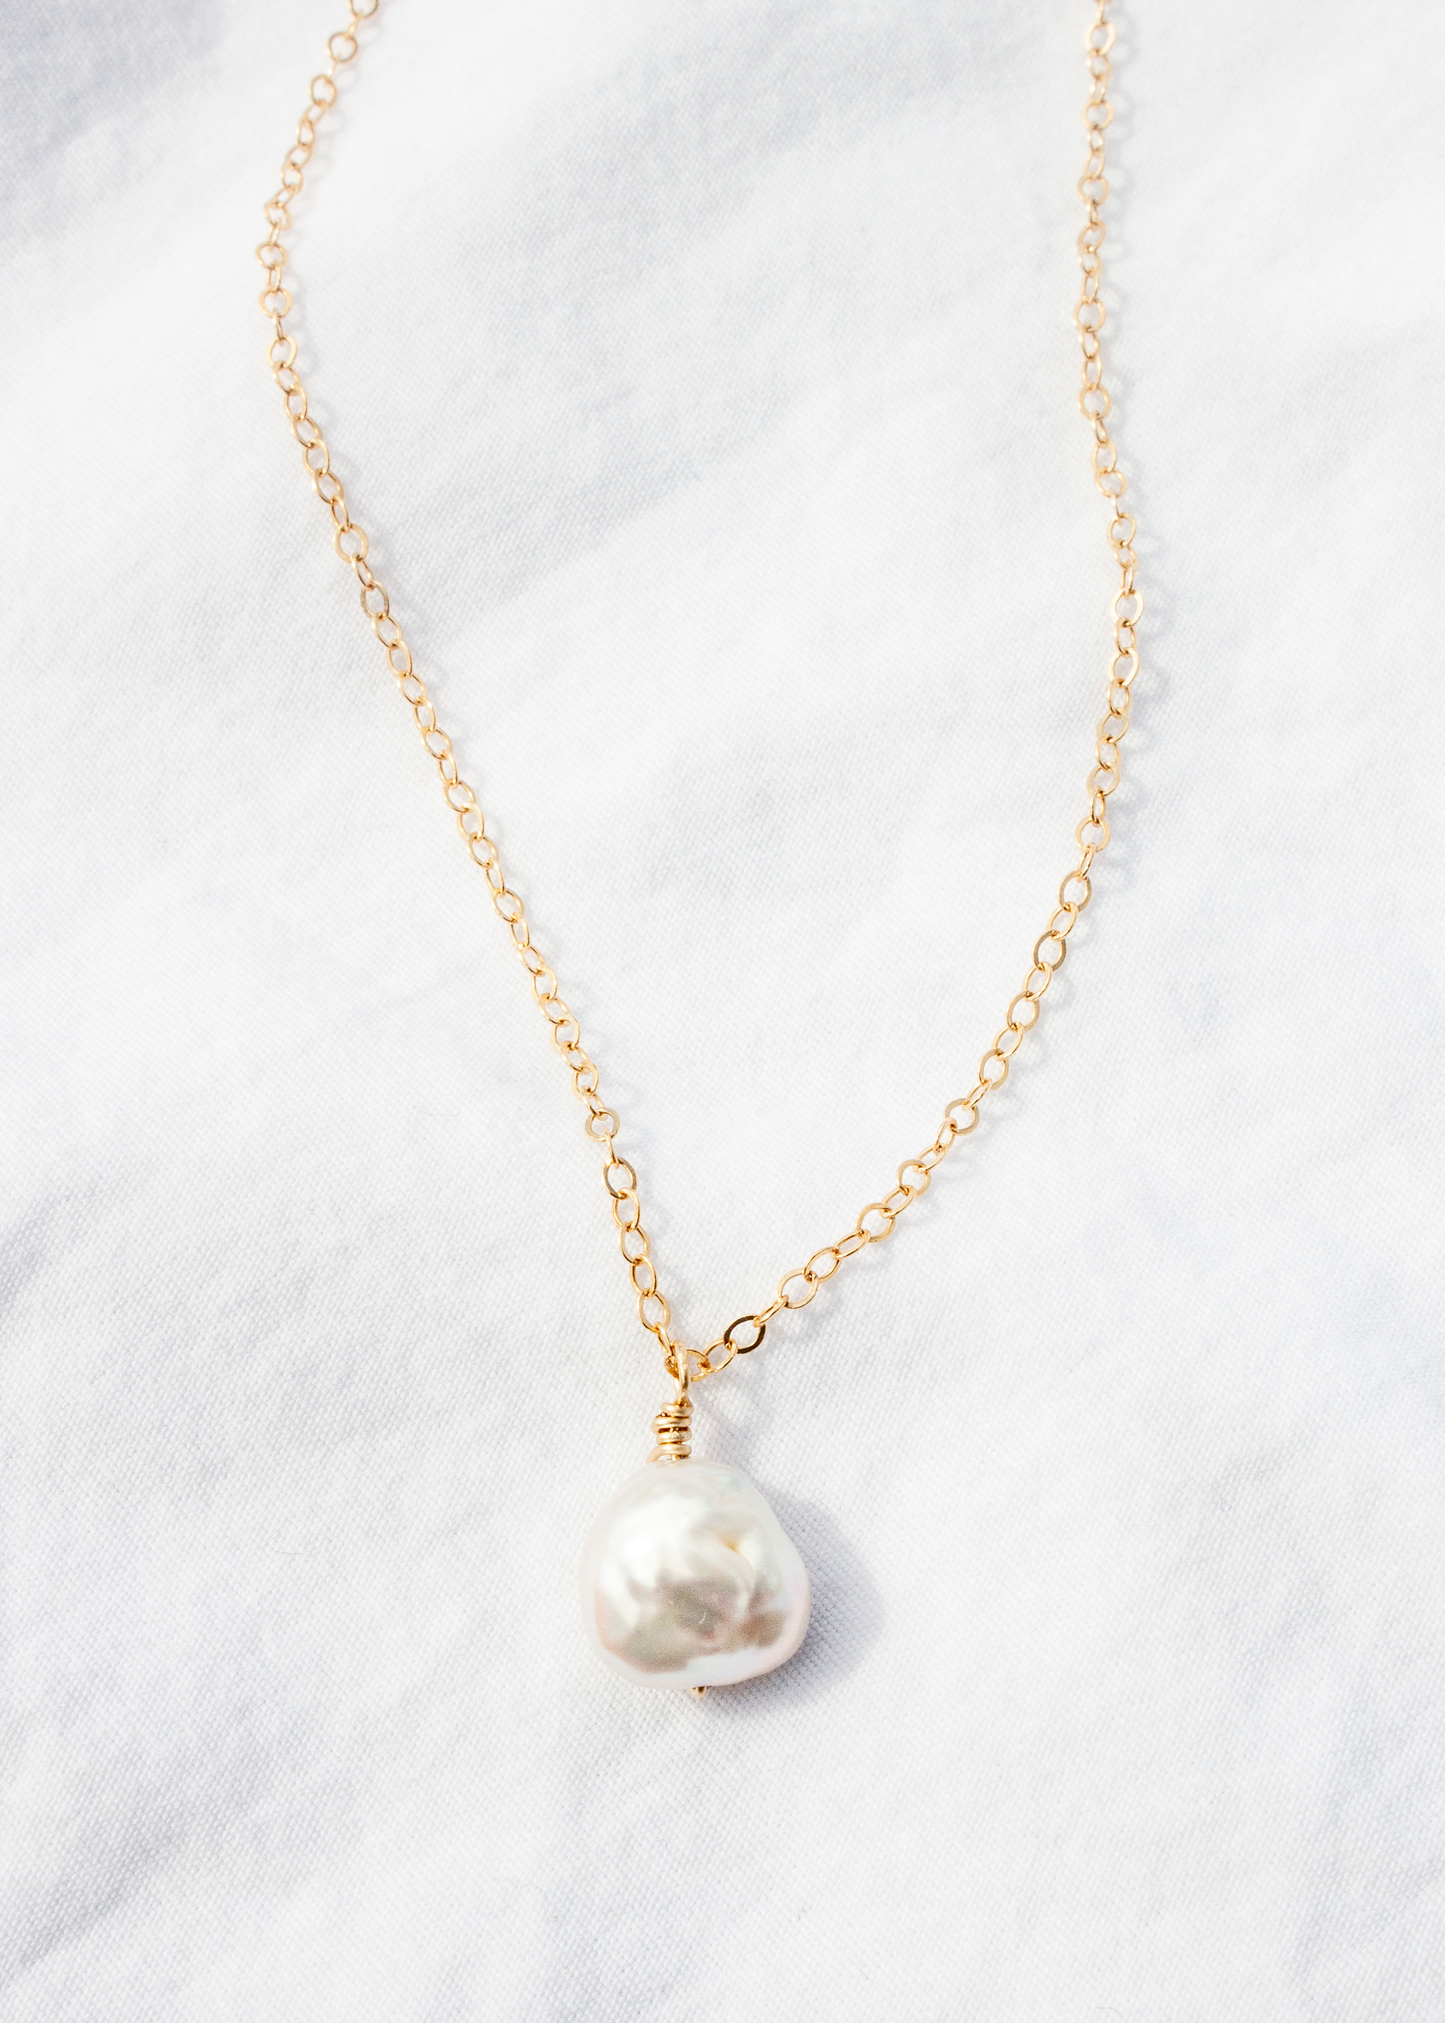 Perlas Necklace in Delicate Chain